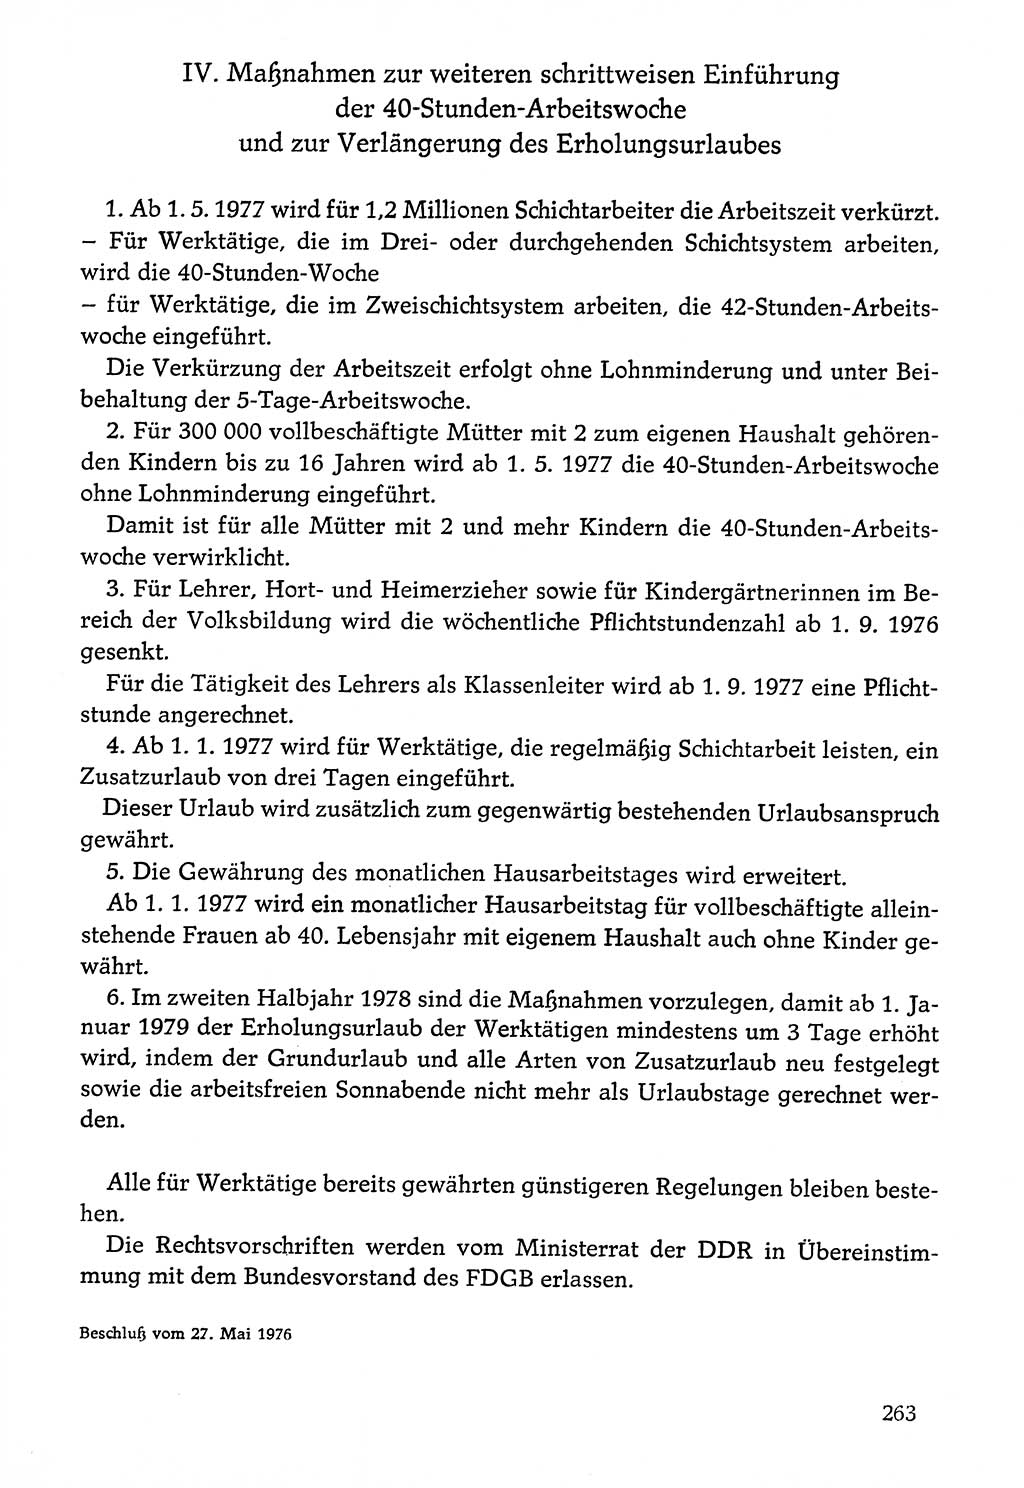 Dokumente der Sozialistischen Einheitspartei Deutschlands (SED) [Deutsche Demokratische Republik (DDR)] 1976-1977, Seite 263 (Dok. SED DDR 1976-1977, S. 263)